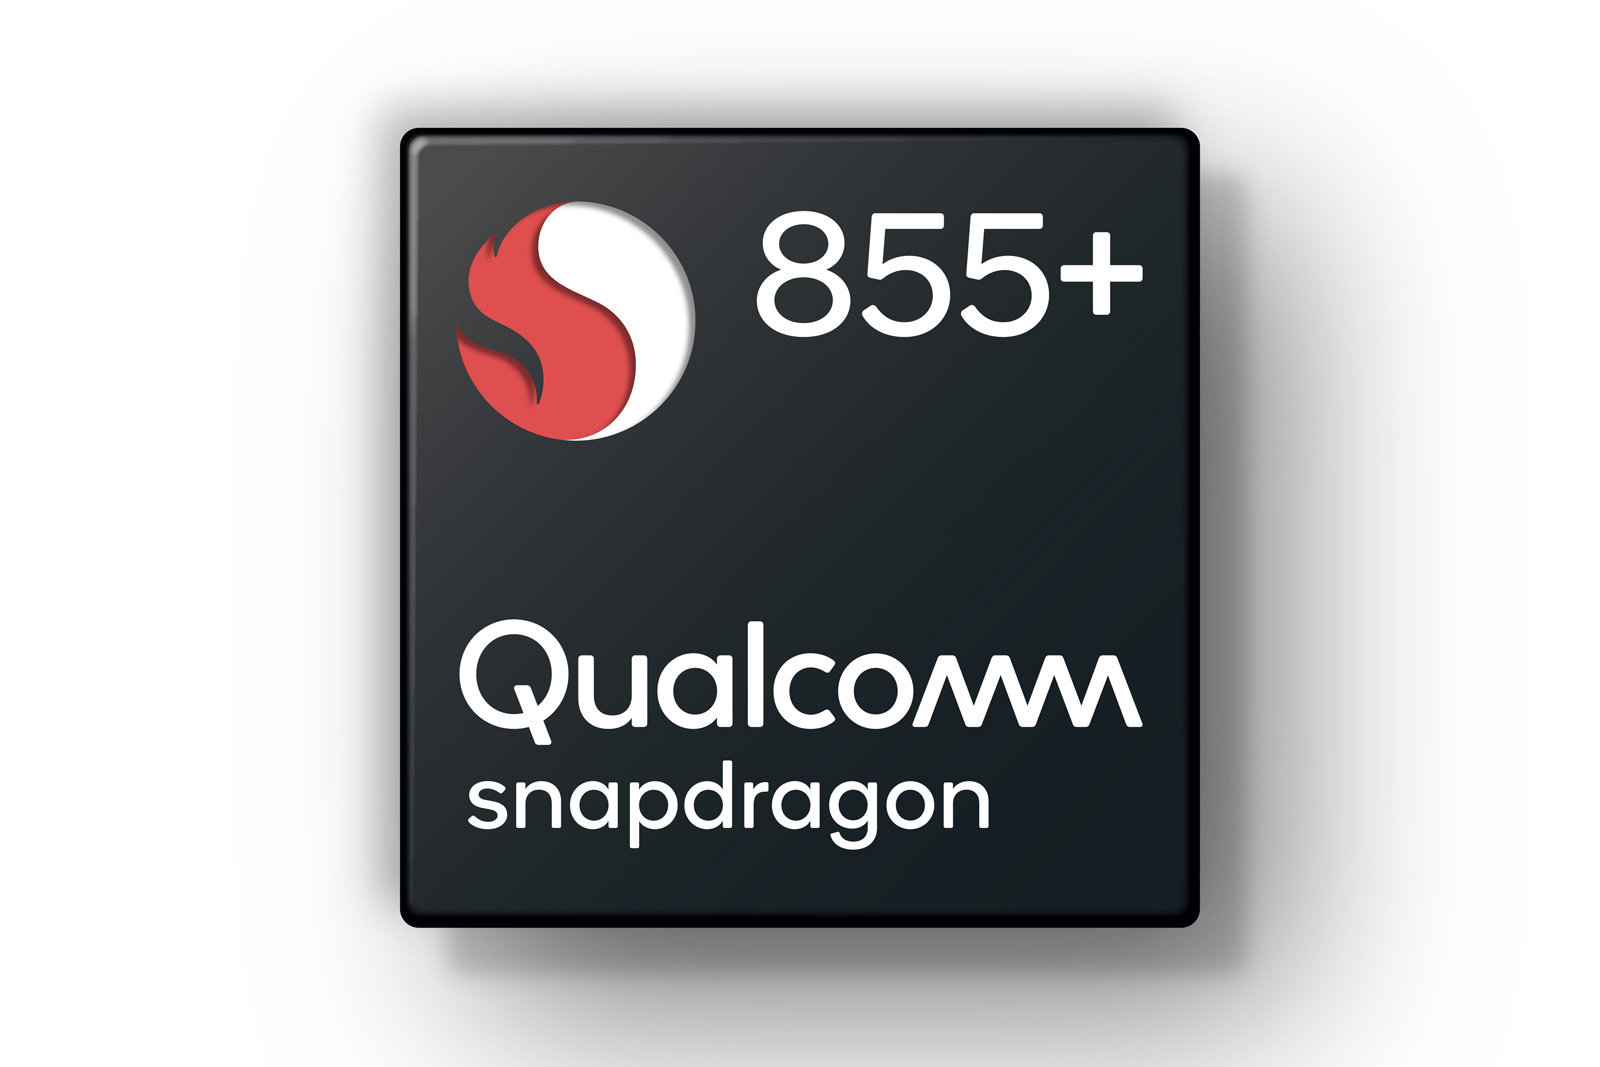 เคาะคะแนน Snapdragon 855+ แรงยิ่งกว่า Apple A12 Bionic!